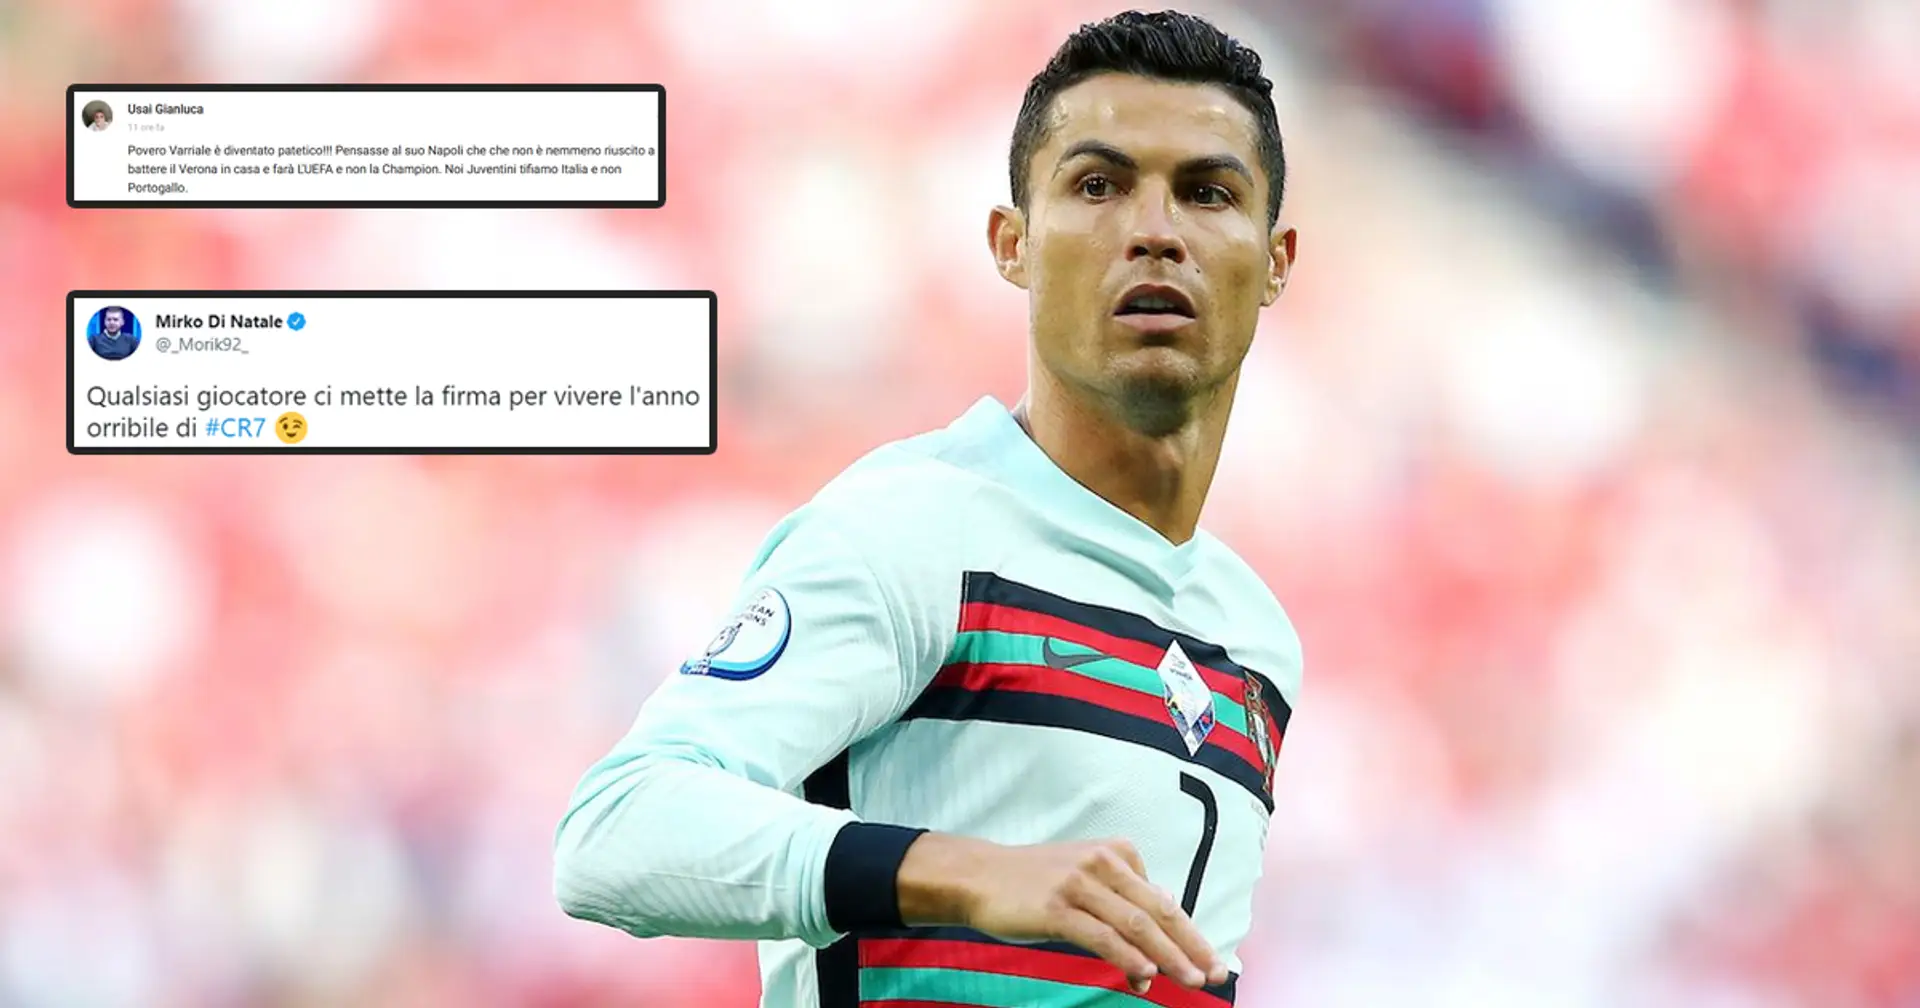 "Chiunque vorrebbe vivere l'anno orribile di Ronaldo": i tifosi della Juve rispediscono al mittente le critiche a CR7